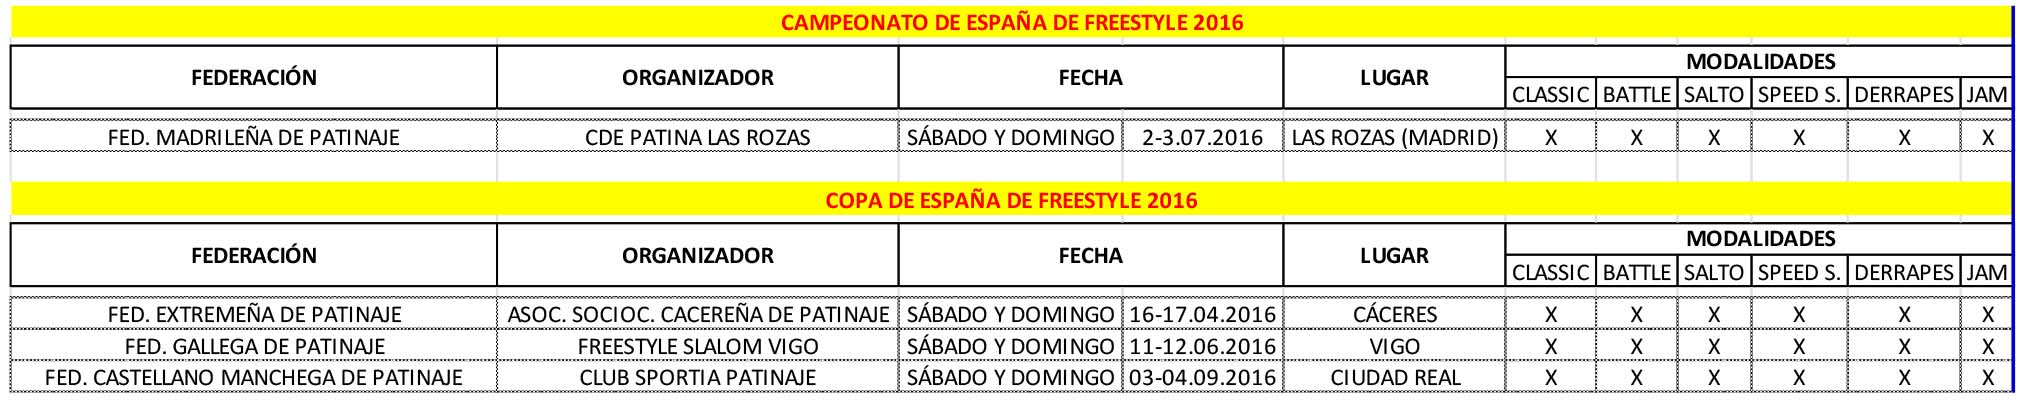  competiciones nacionales de freestyle 2016